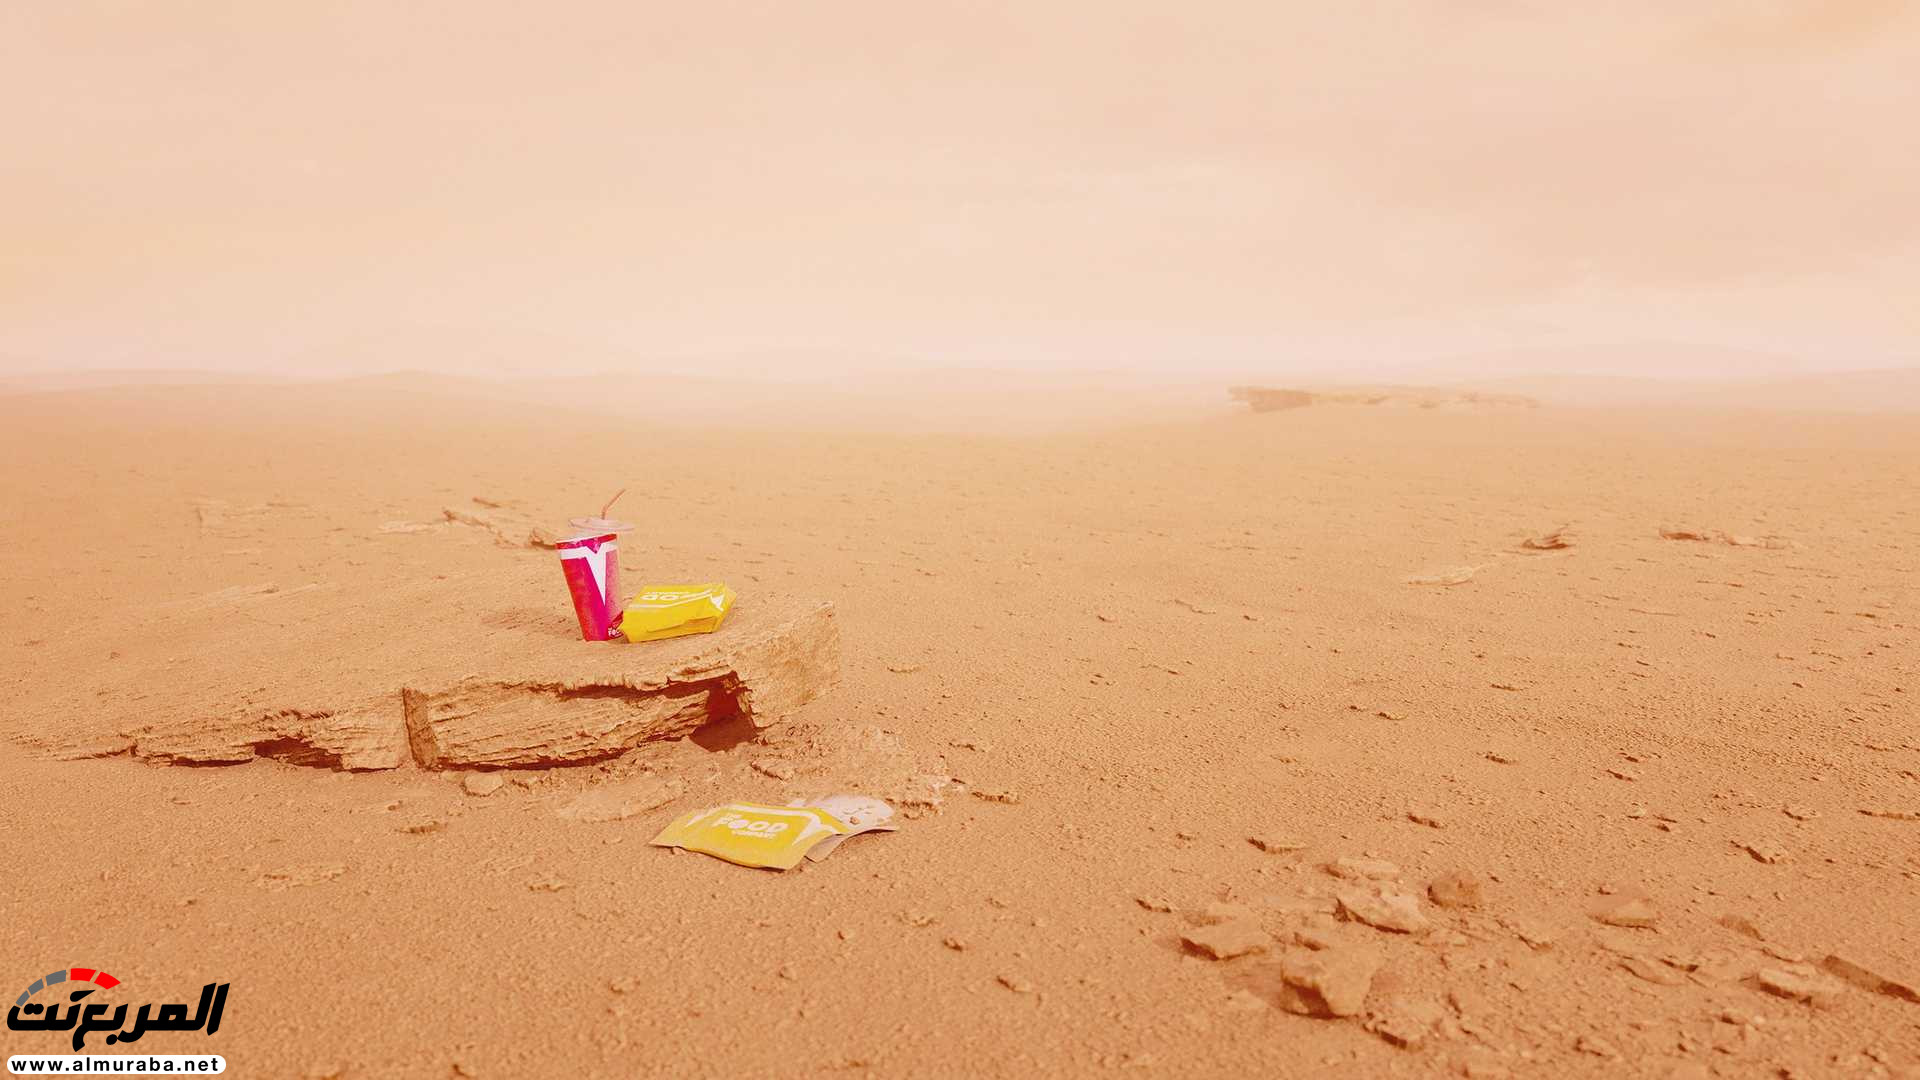 تيسلا رودستر وصلت إلى المريخ في صور تخيلية 4